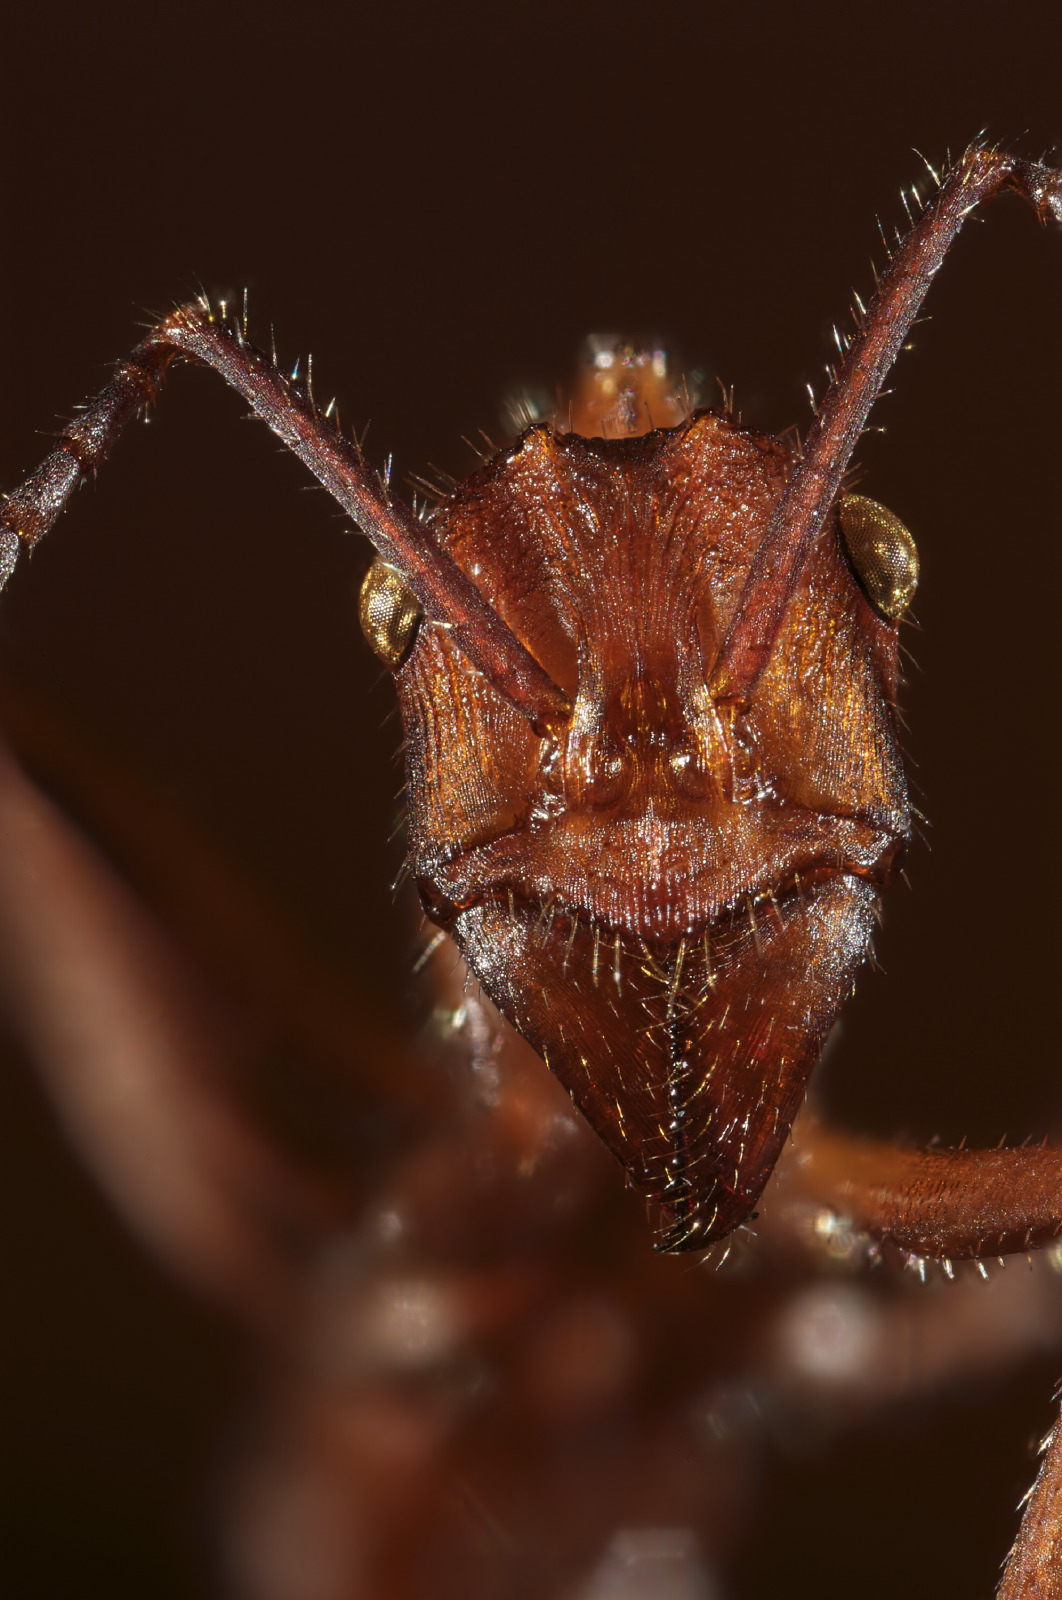 Ectatomma ant portrait